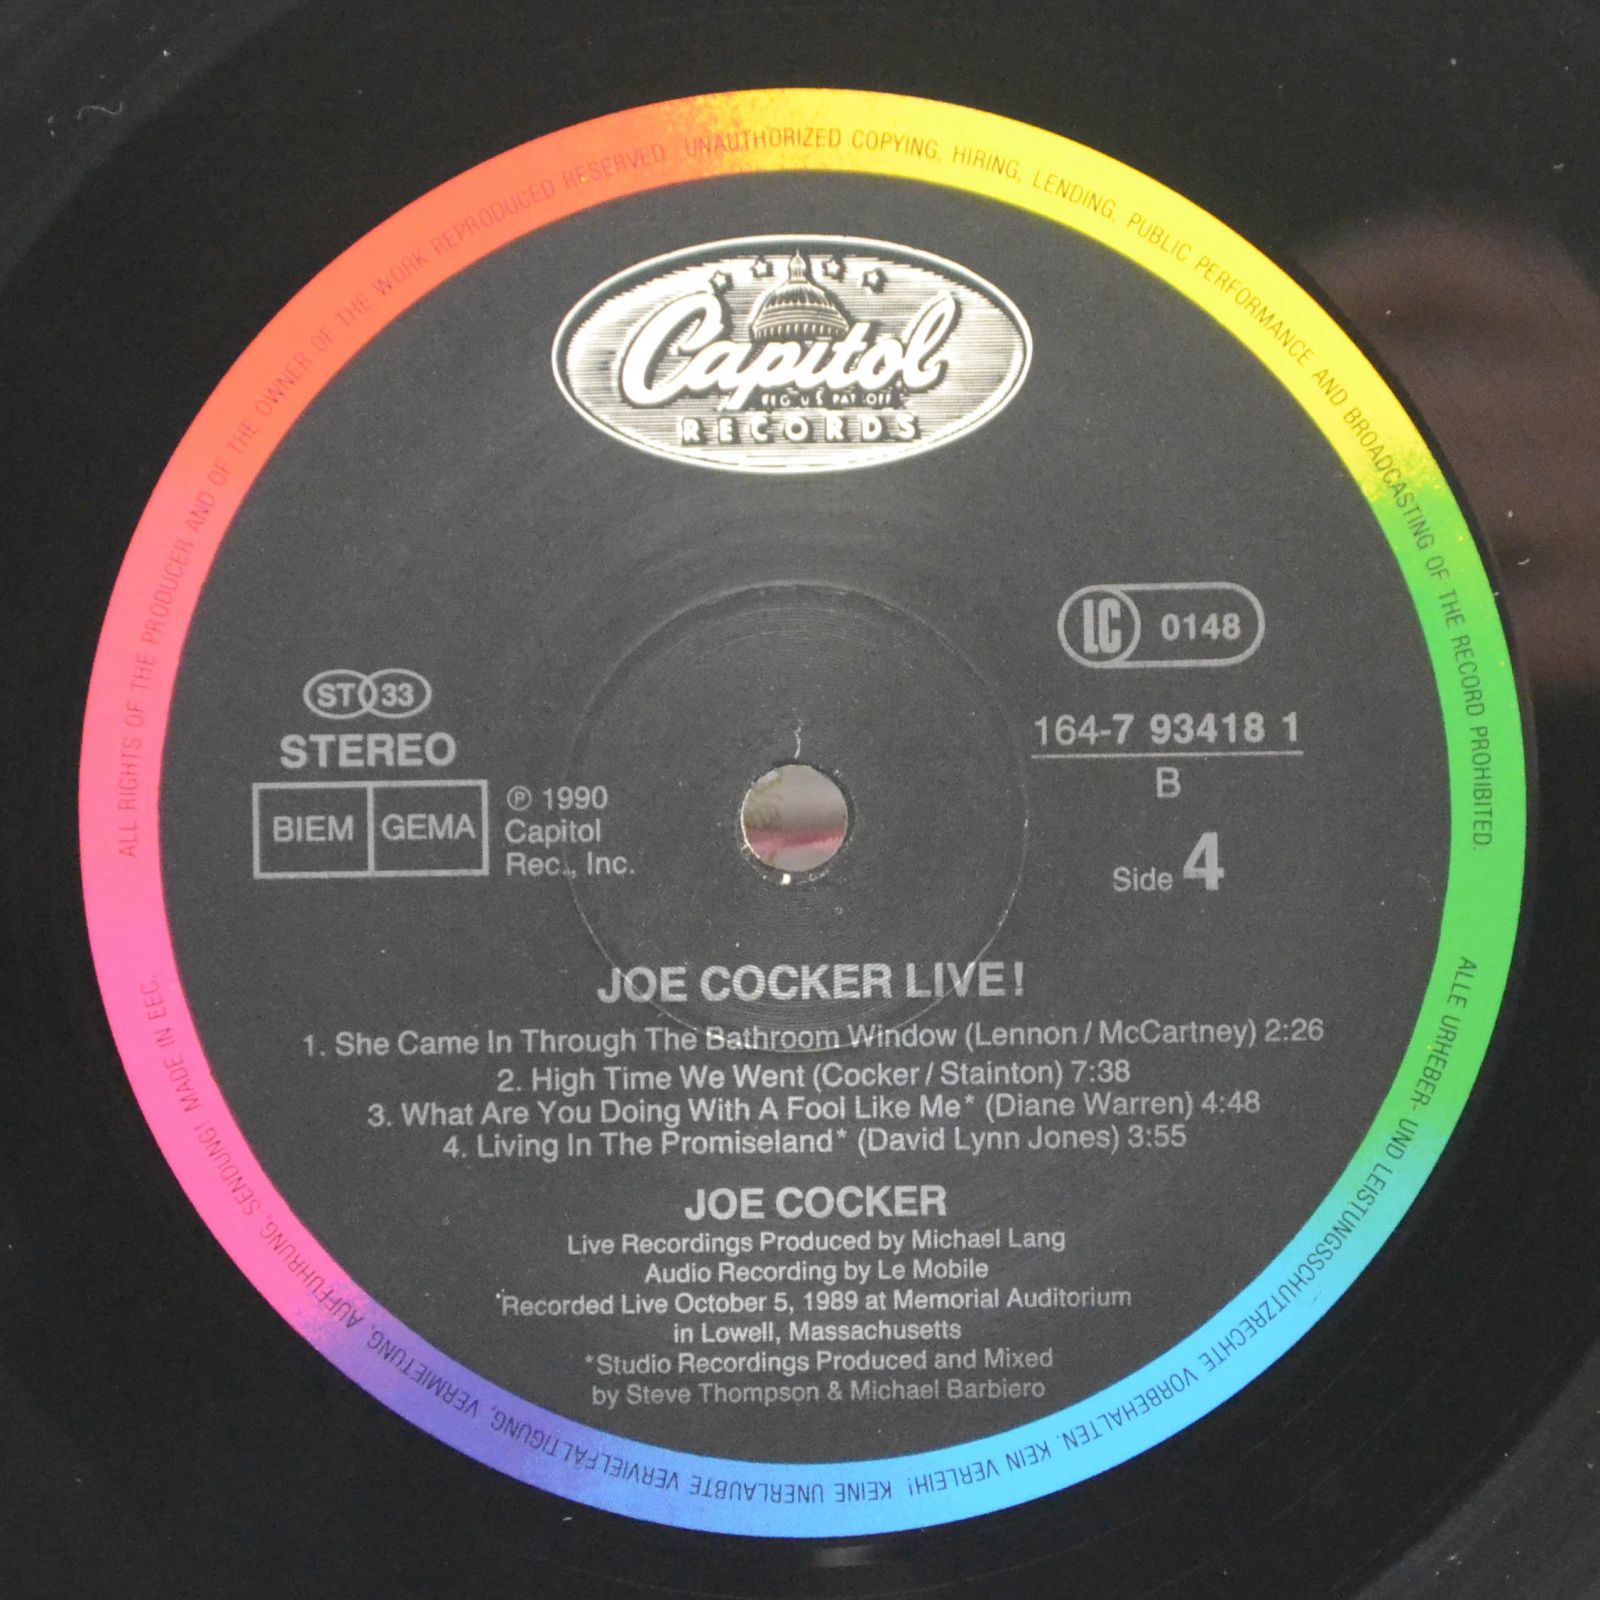 Joe Cocker — Joe Cocker Live (2LP), 1990